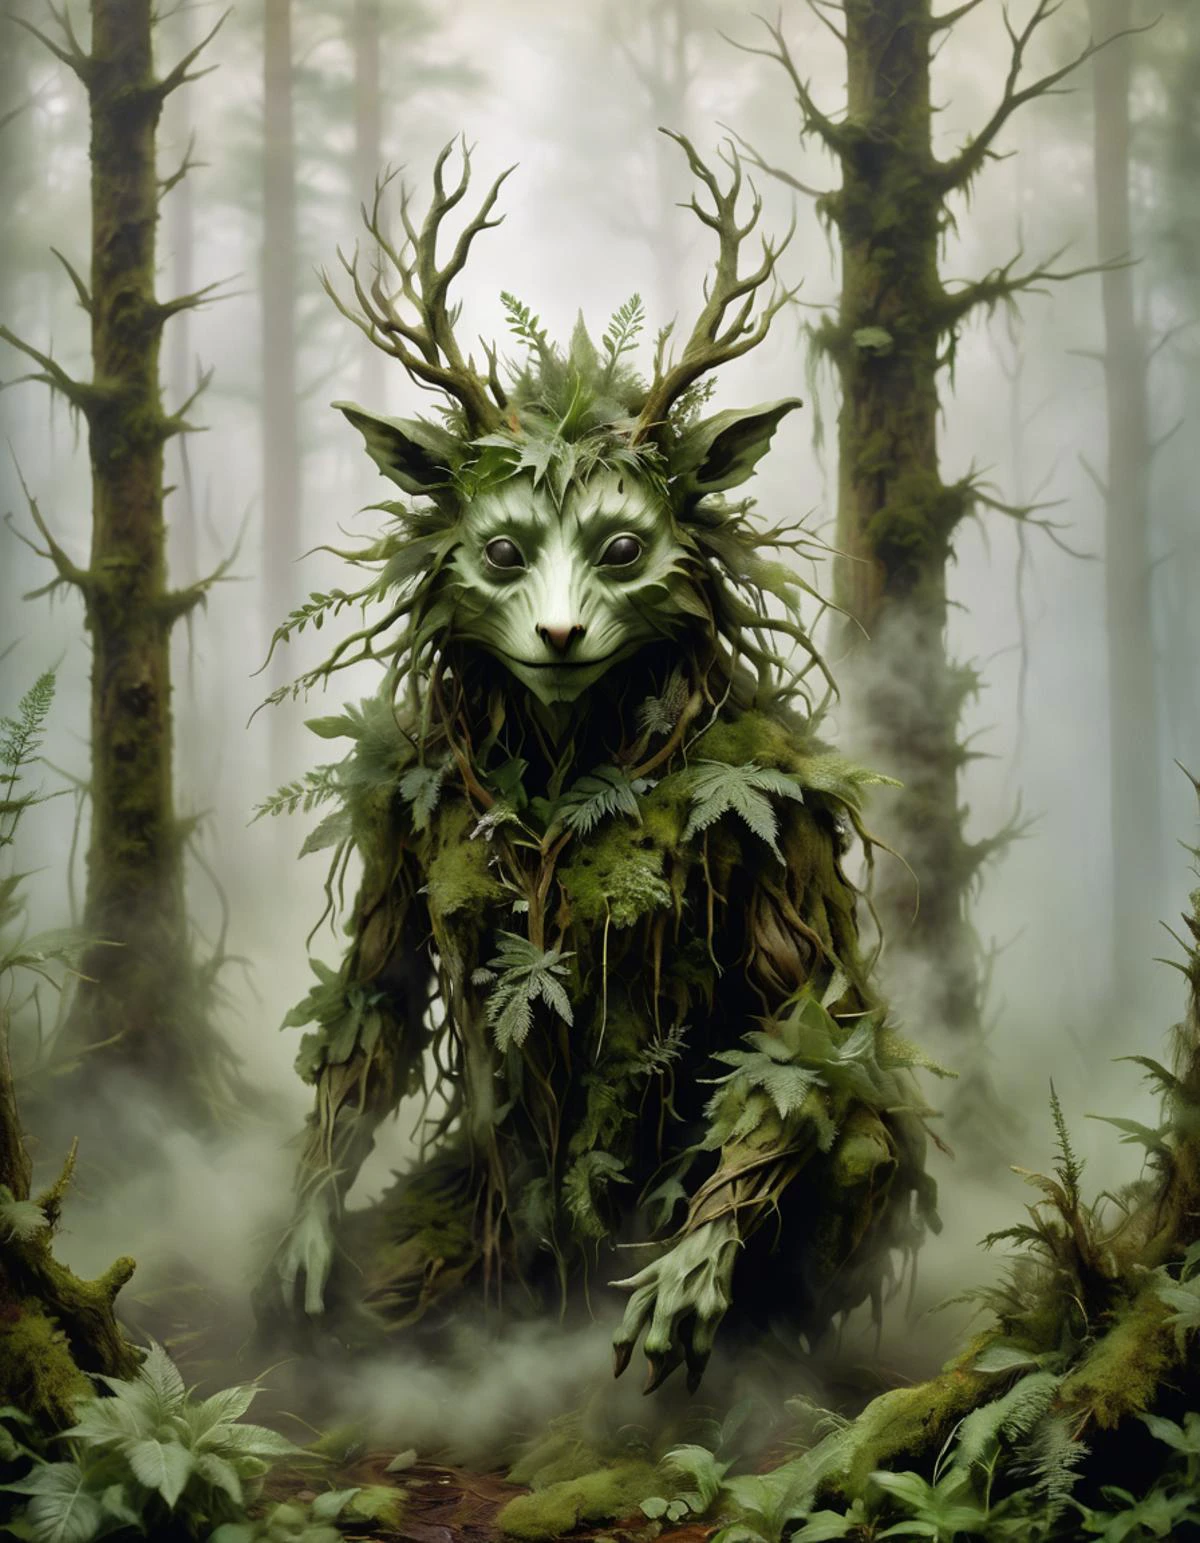 مخلوق الغابة مصنوع من الضباب الكثيف, محاط بالضباب والنباتات المورقة. بأسلوب الفن البيئي لـ Wendy Froud.